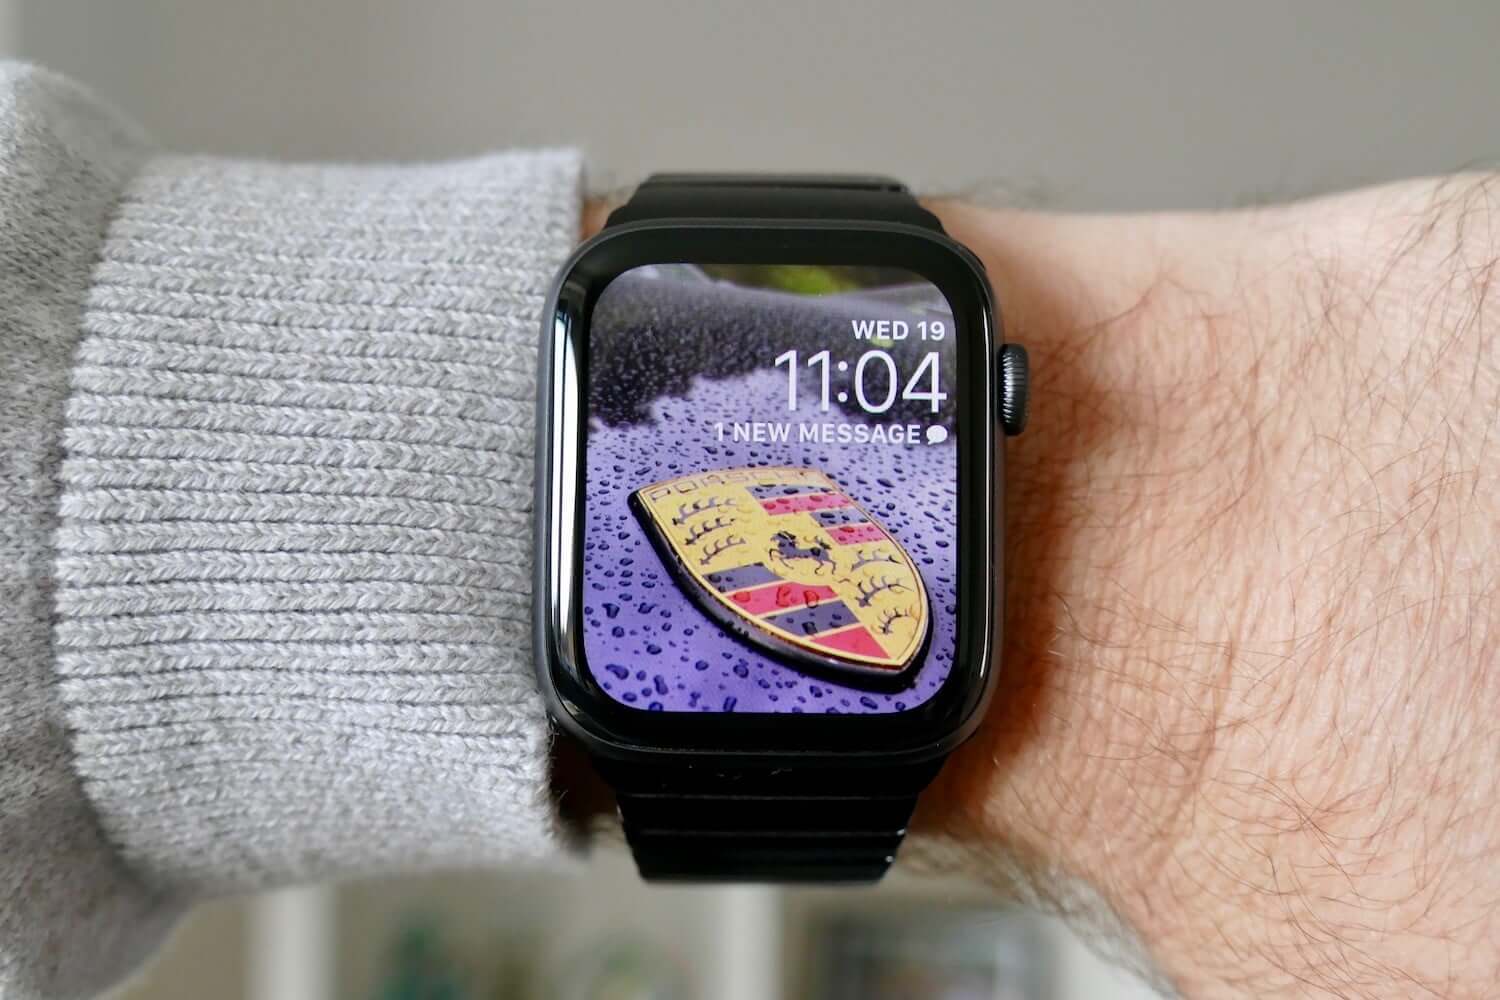 Miễn phí tải hình nền đẹp cho Apple Watch của bạn. Tô điểm cho chiếc đồng hồ thông minh của bạn với những hình nền độc đáo và tuyệt đẹp từ chúng tôi. Hãy tạo nên phong cách riêng cho Apple Watch của bạn với những hình nền đẹp nhất.